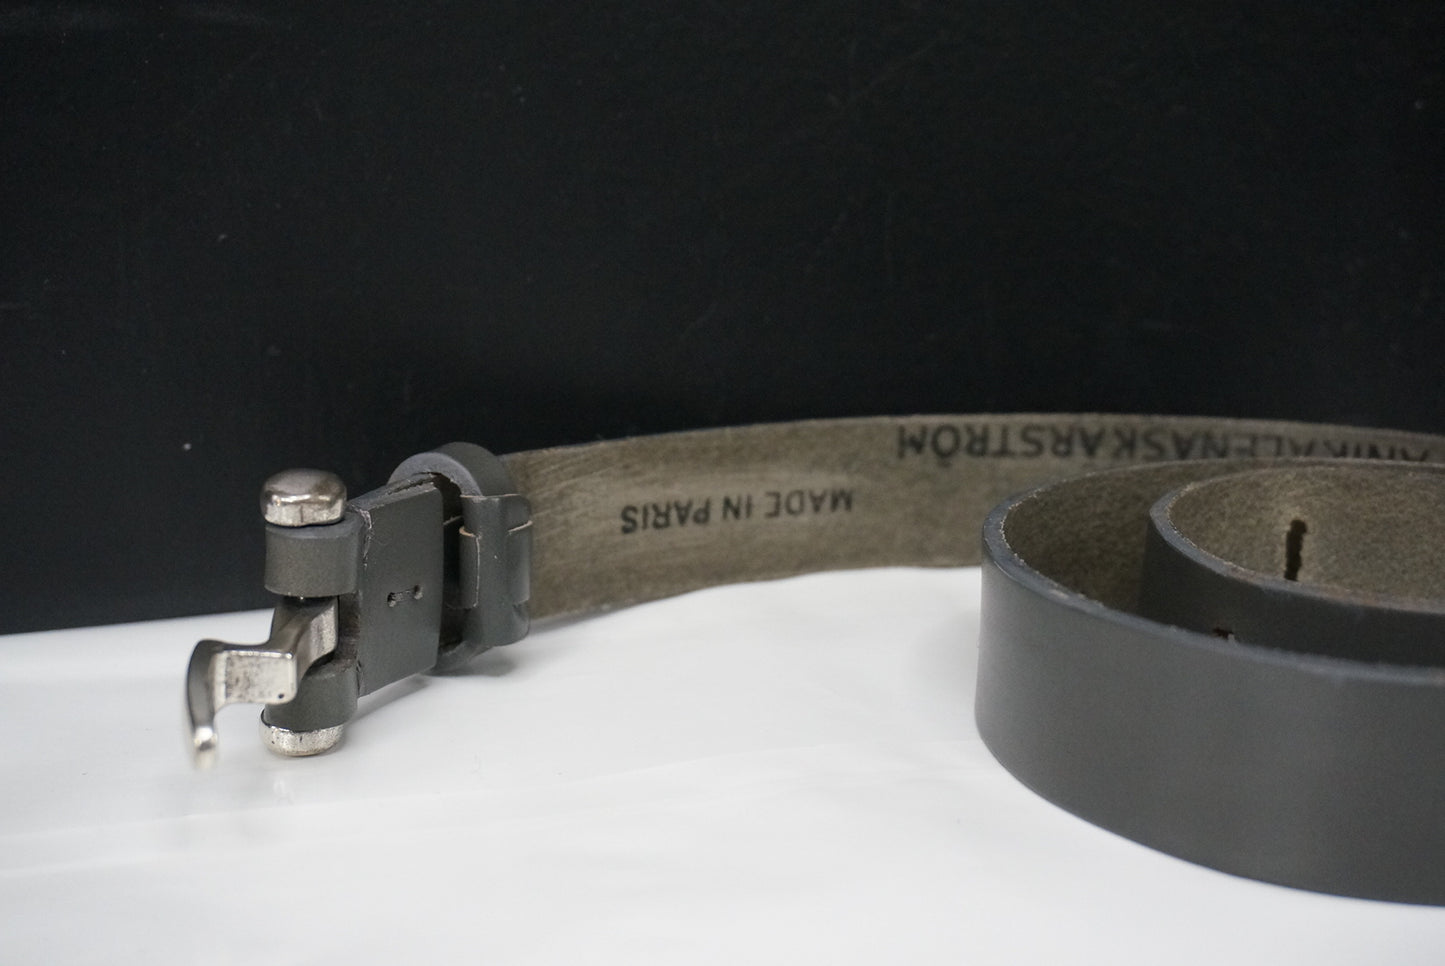 Short buckle belt